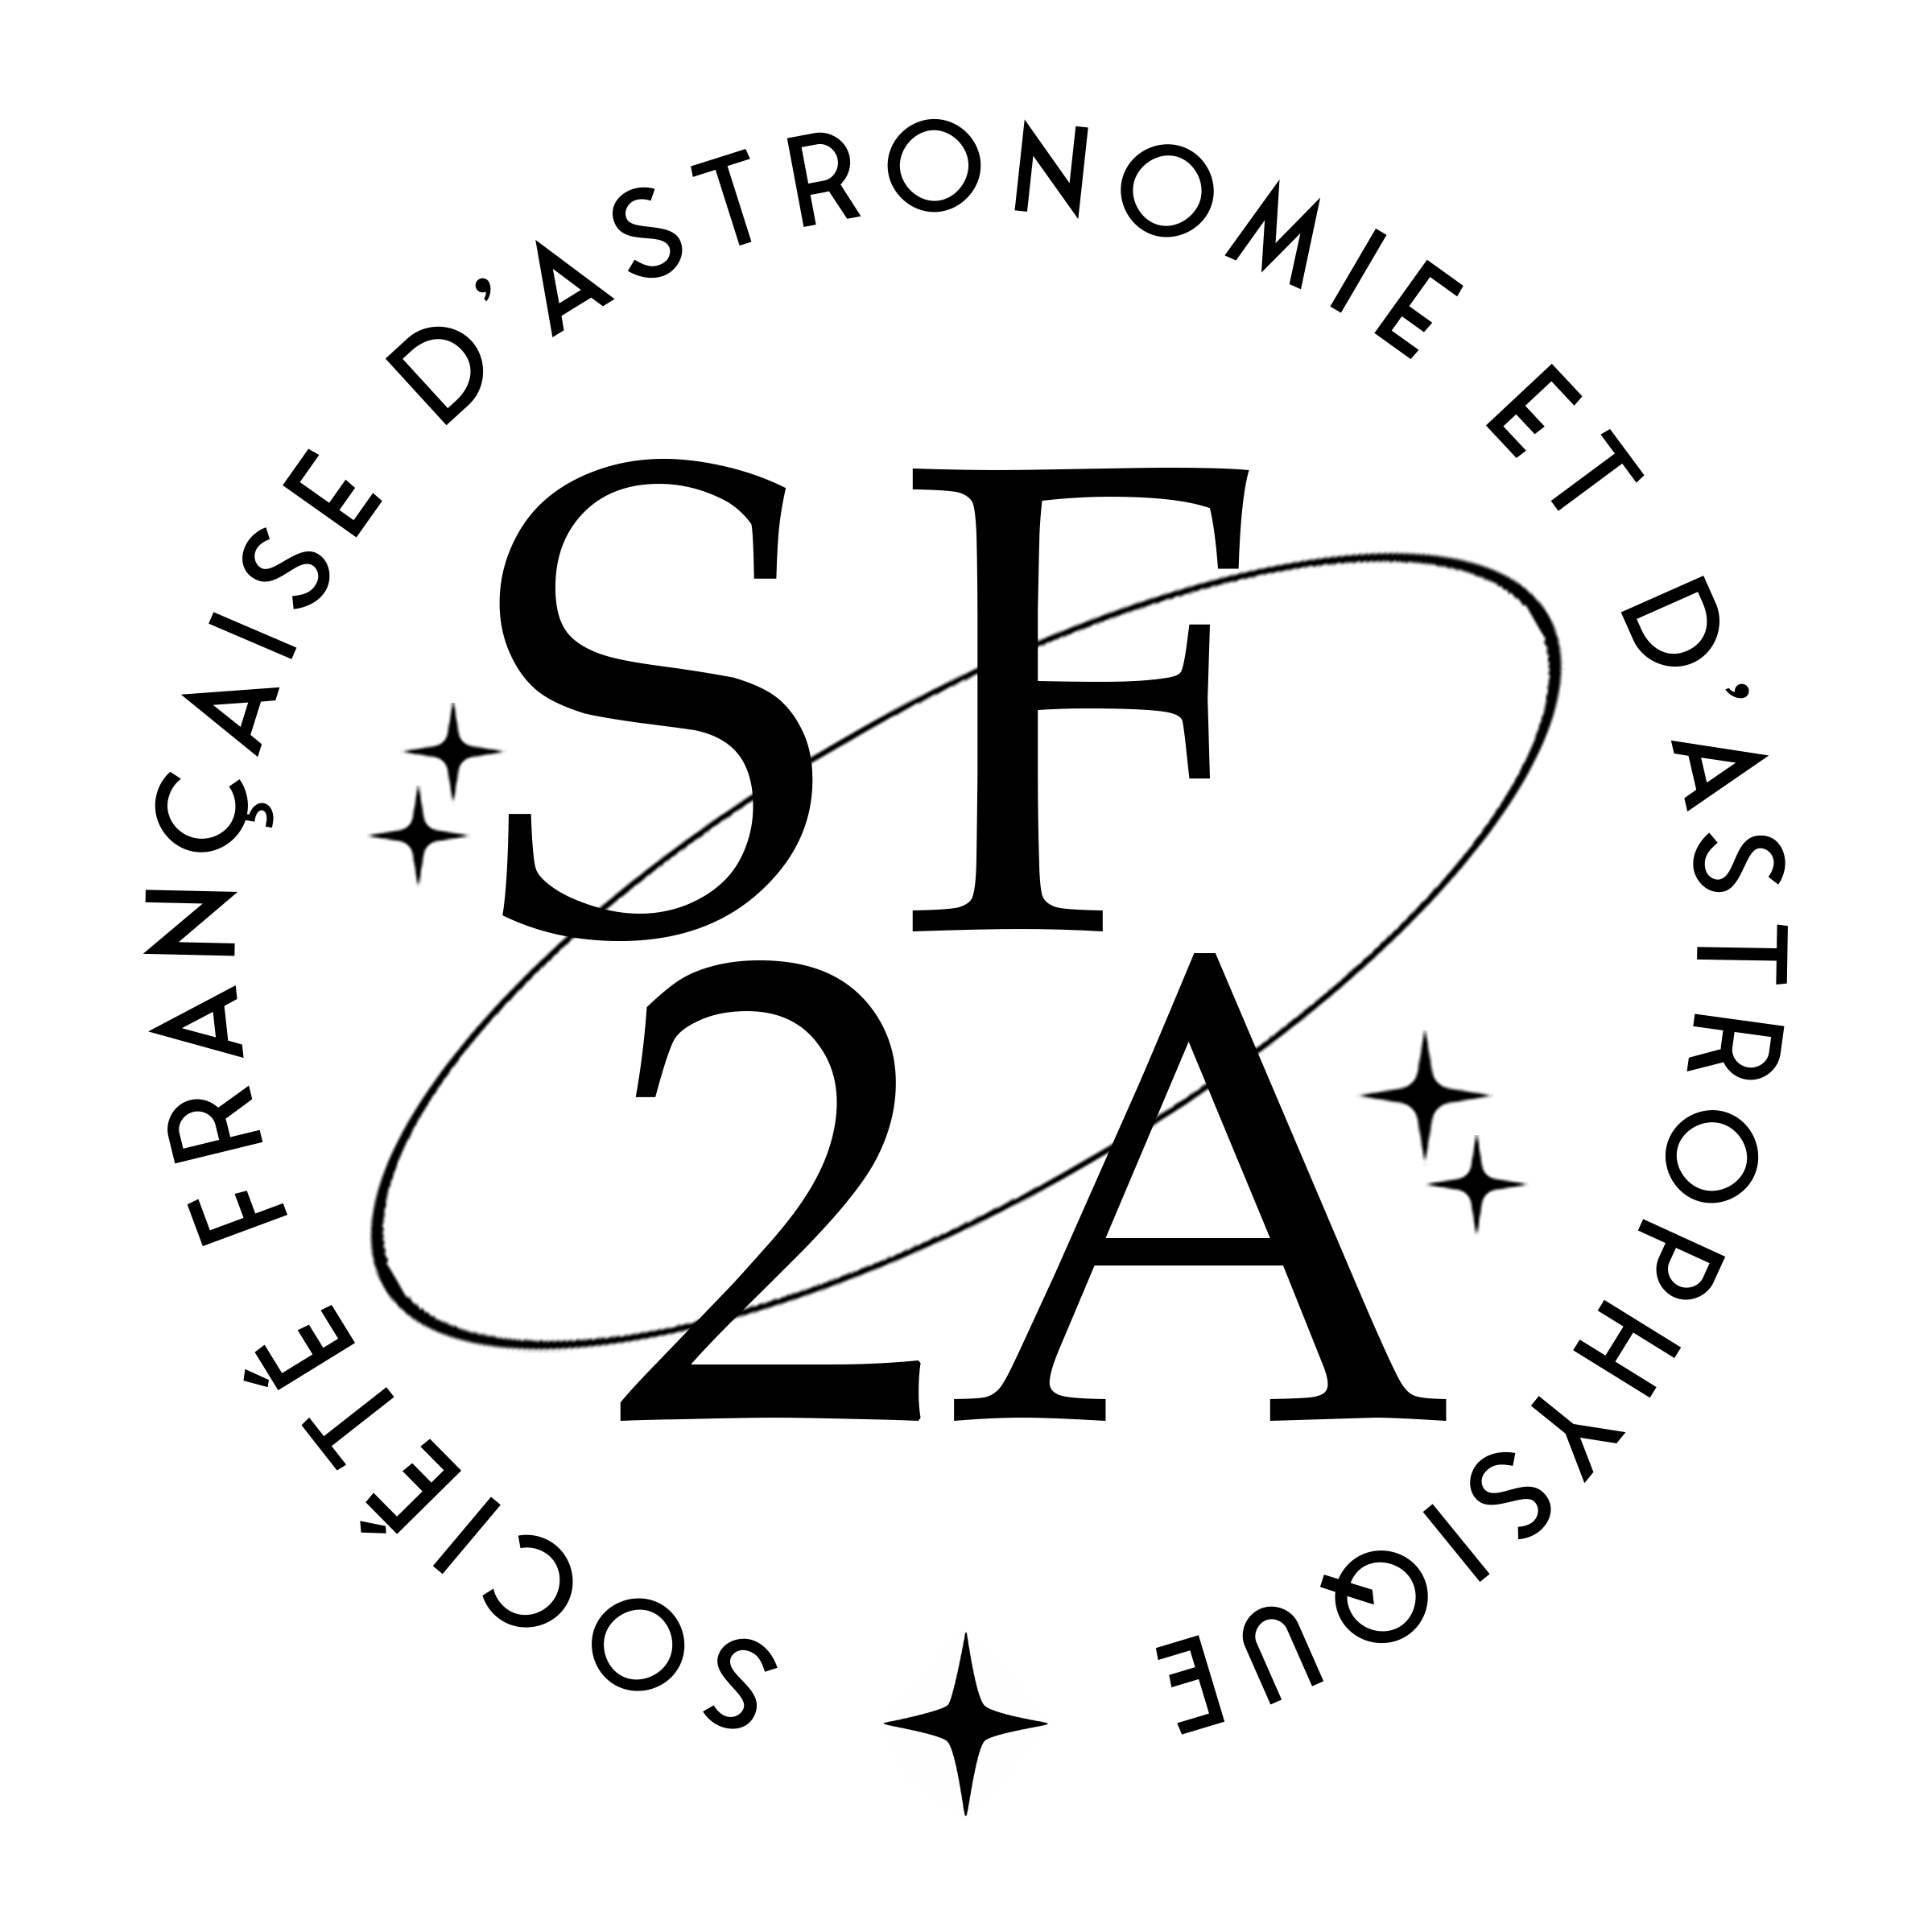 SF2A